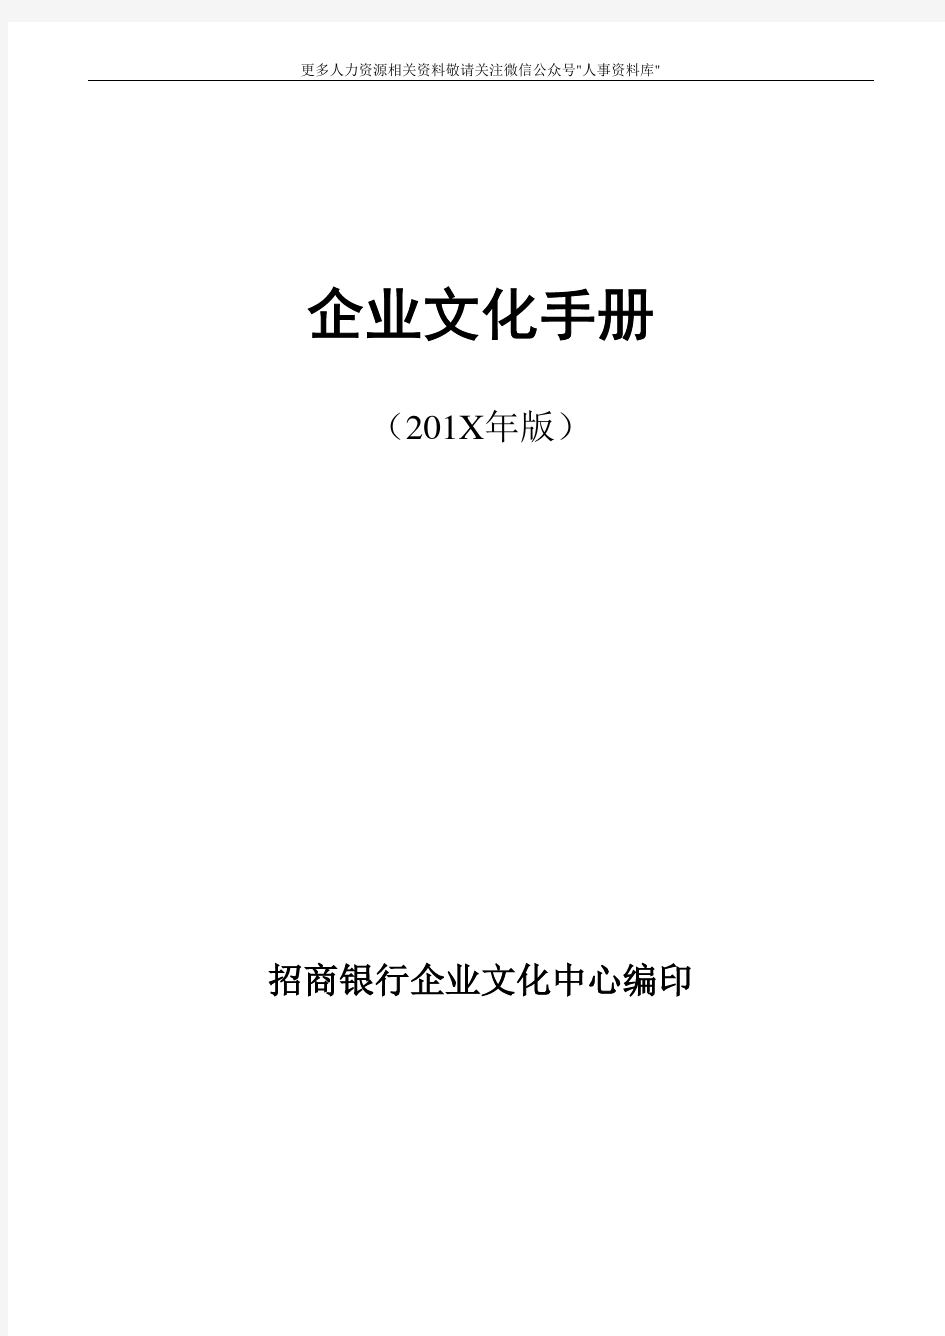 企业文化专题-招行企业文化手册(定稿)